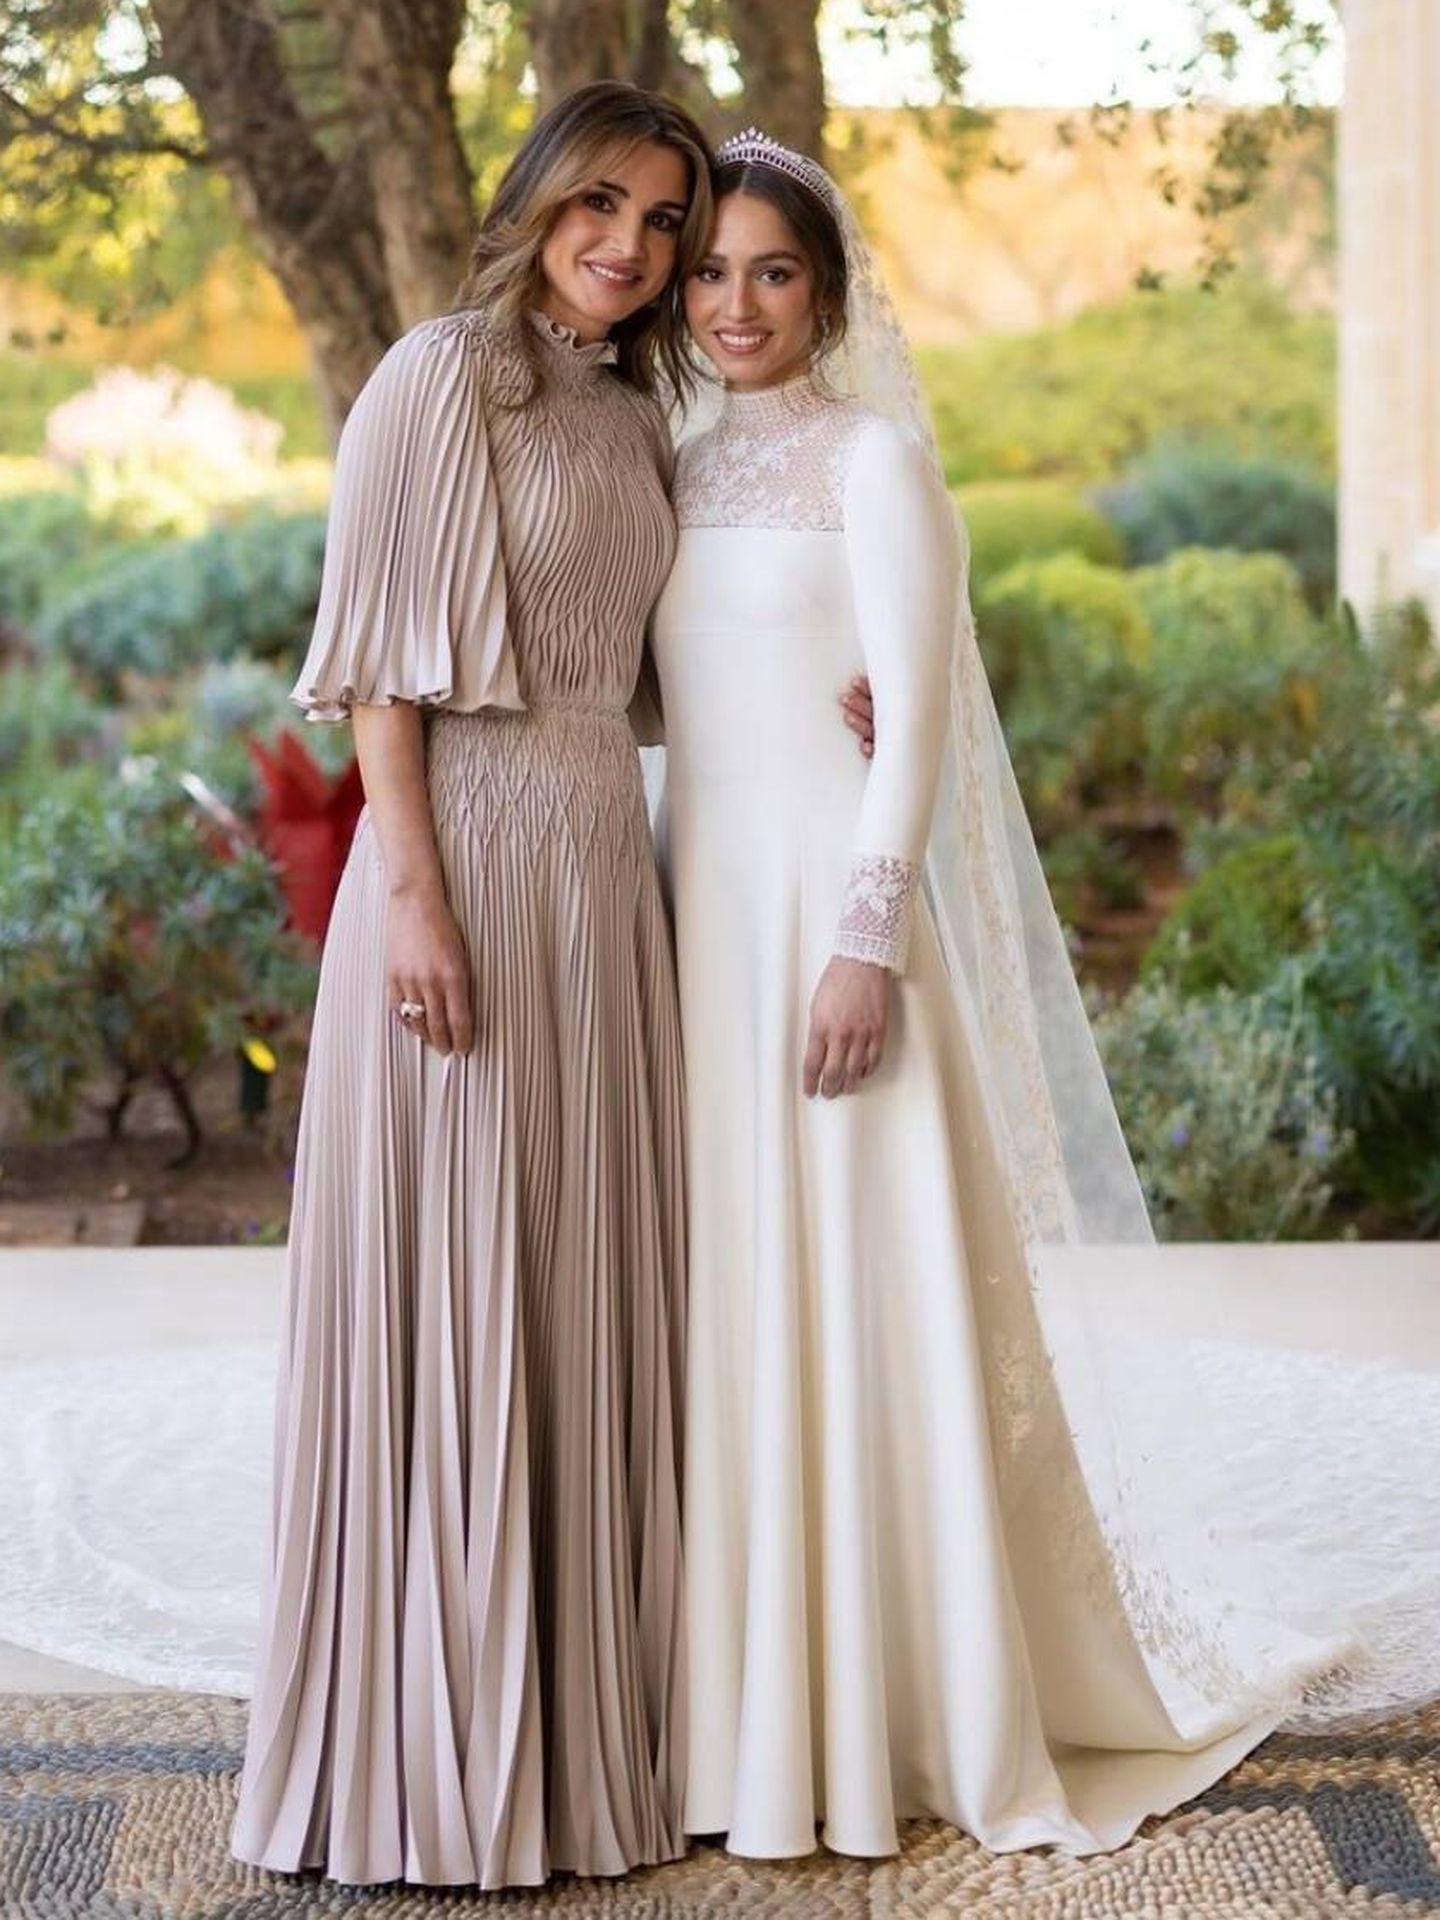 La reina Rania junto a Iman. (Instagram)